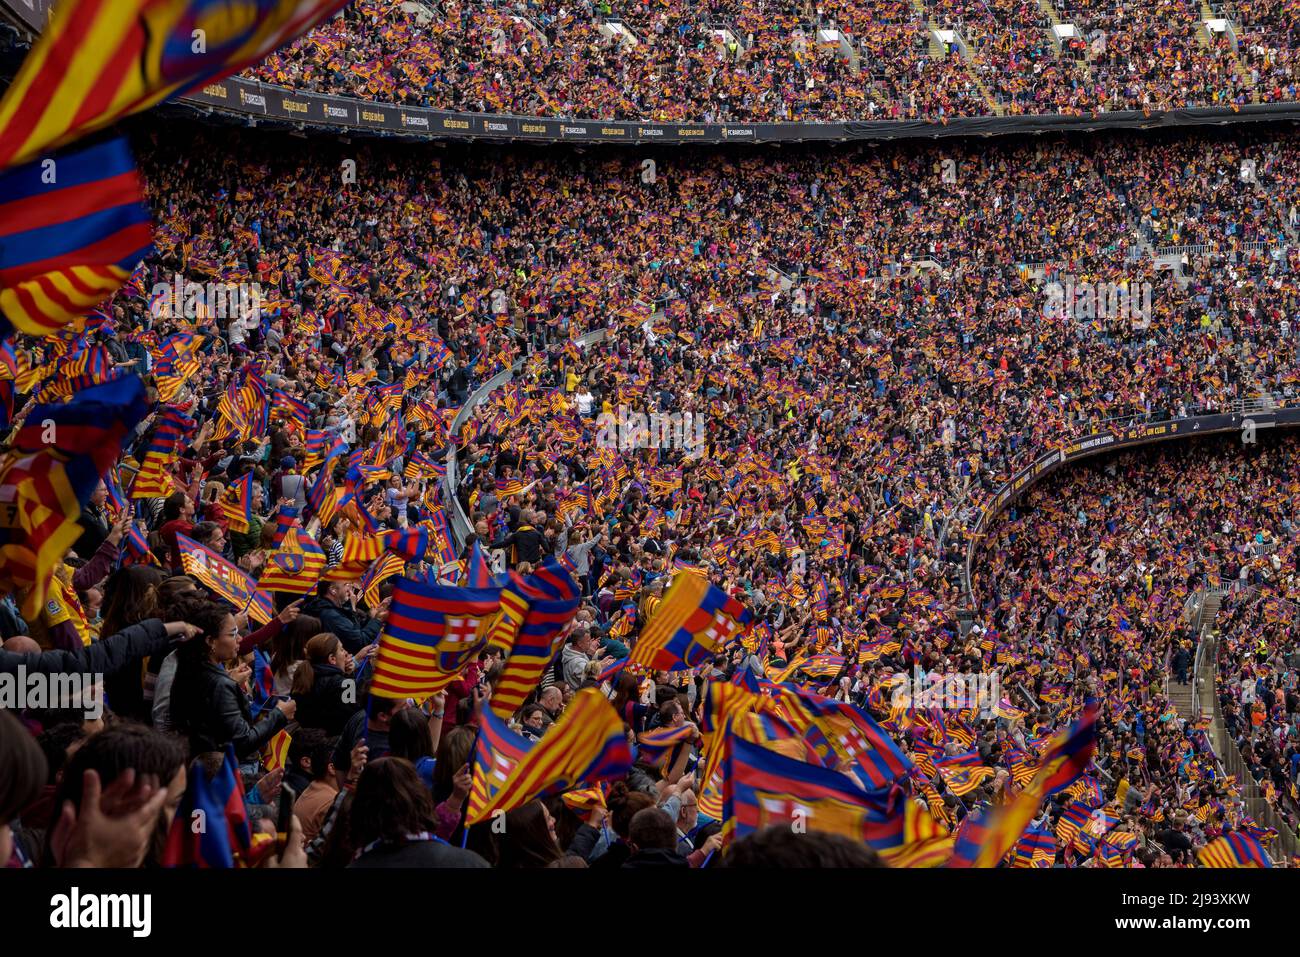 Ambiance festive au stade Camp Nou, vendu avec 91 648 spectateurs, le record mondial de participation à un match de football féminin, dans la Ligue des Champions 2022 Banque D'Images